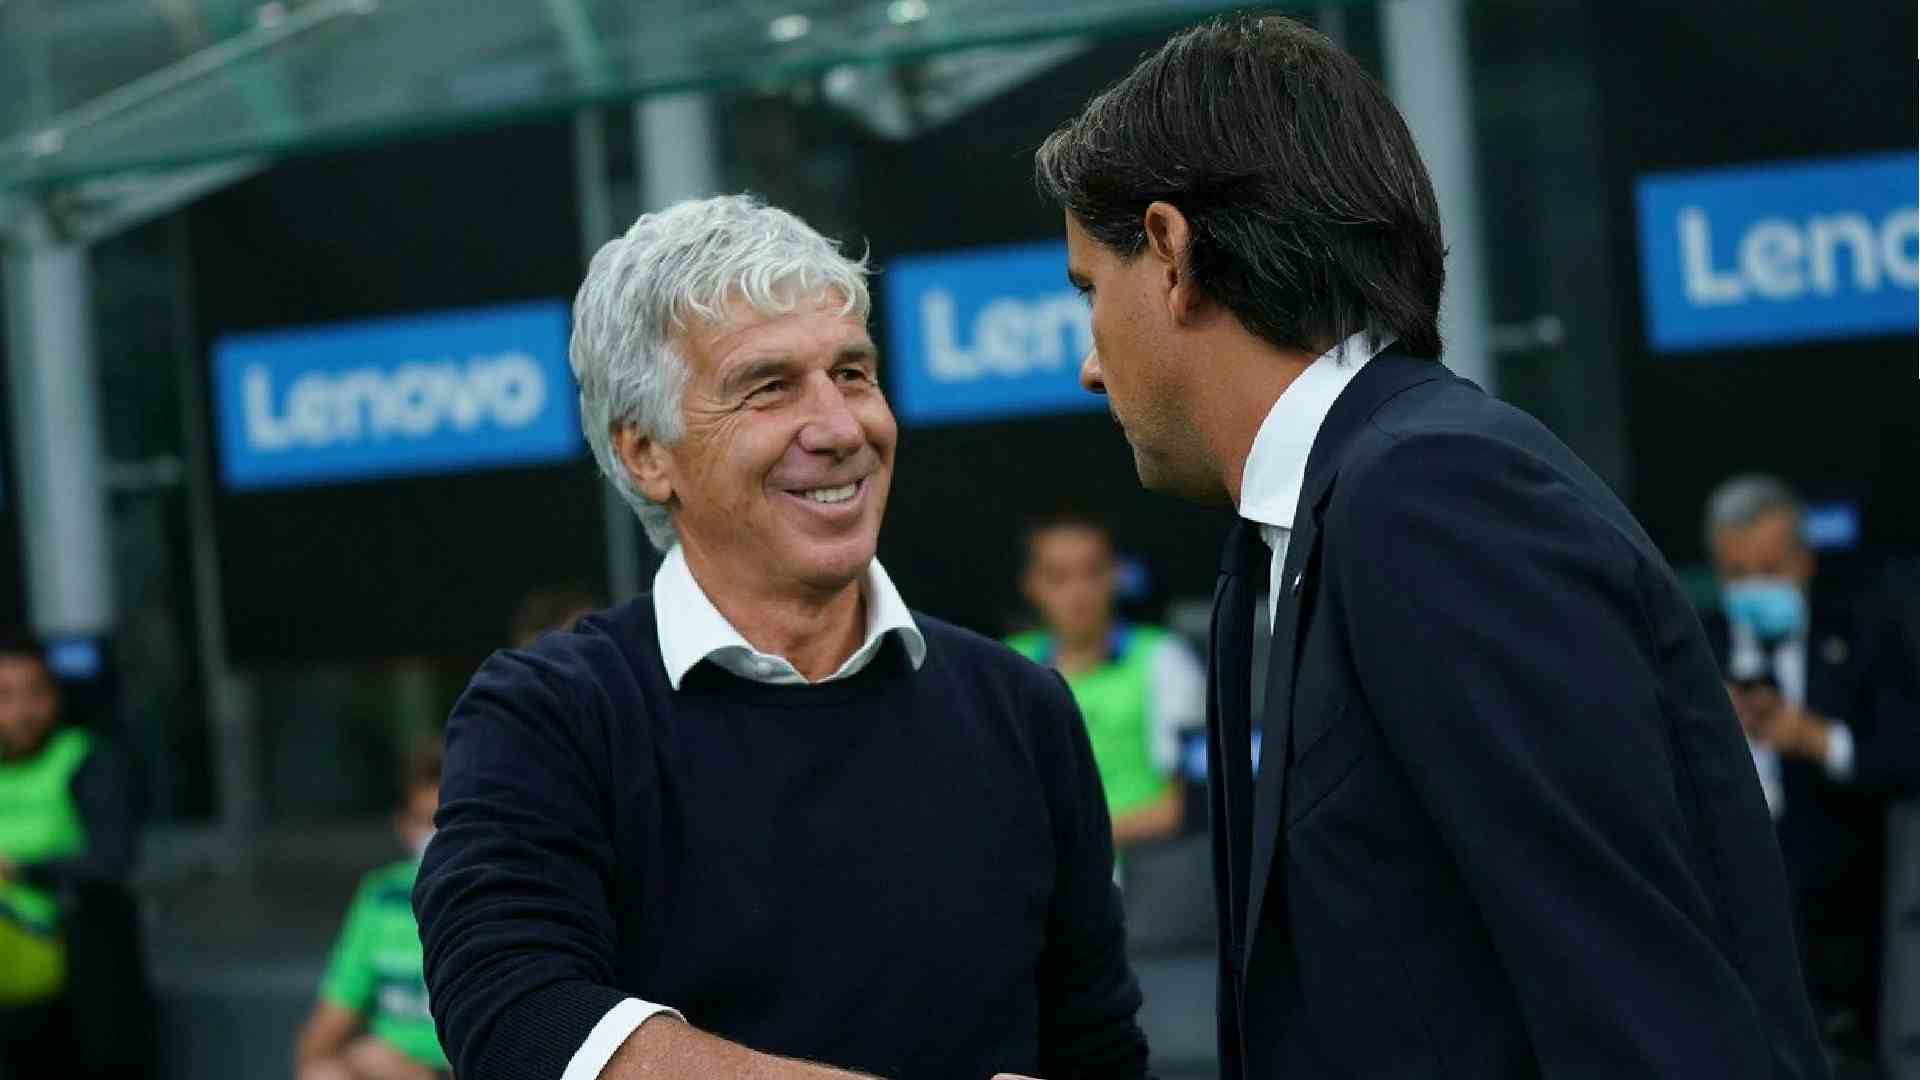 Gasperini stoccata epocale all'Inter: "Facile vincere indebitandosi..." (VIDEO)